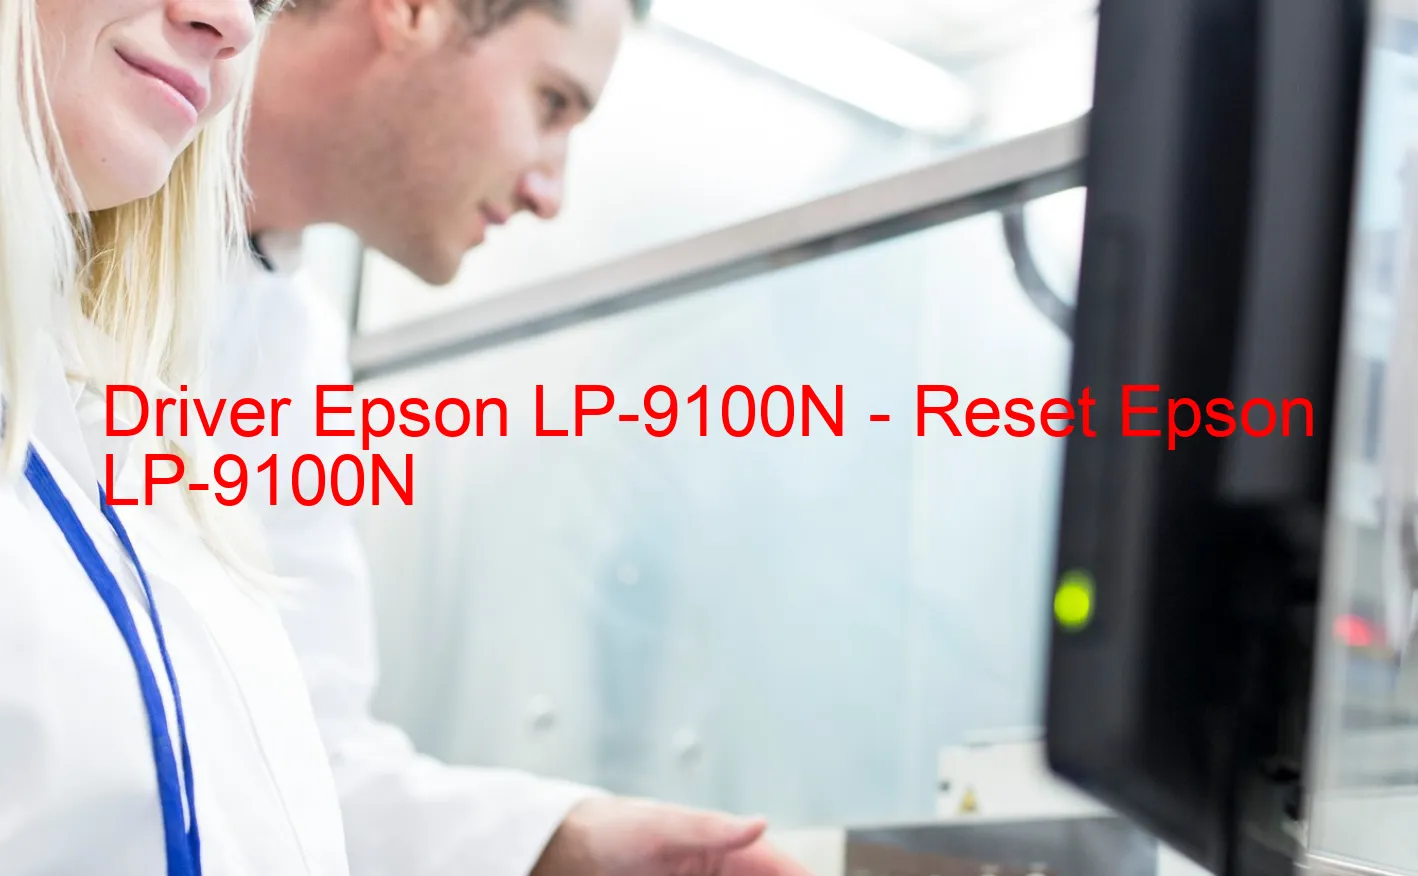 Epson LP-9100Nのドライバー、Epson LP-9100Nのリセットソフトウェア